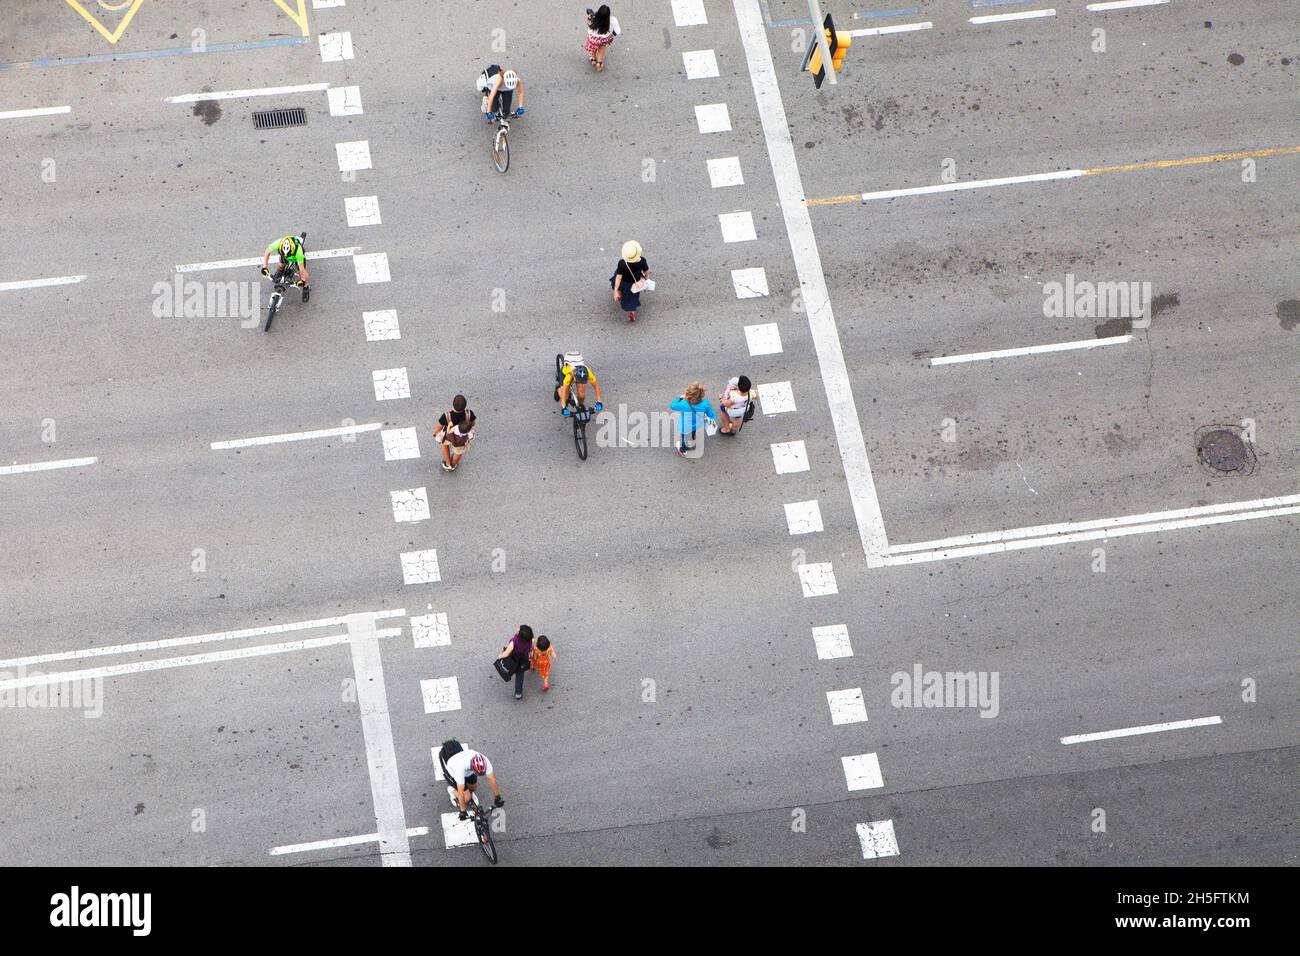 Fußgänger und Radfahrer (keine Erkennbarkeit) auf einer grauen Verkehrsstraße mit weißen gestrichelten Linien. Keine Autos.  Aus der Vogelperspektive. Stock Photo